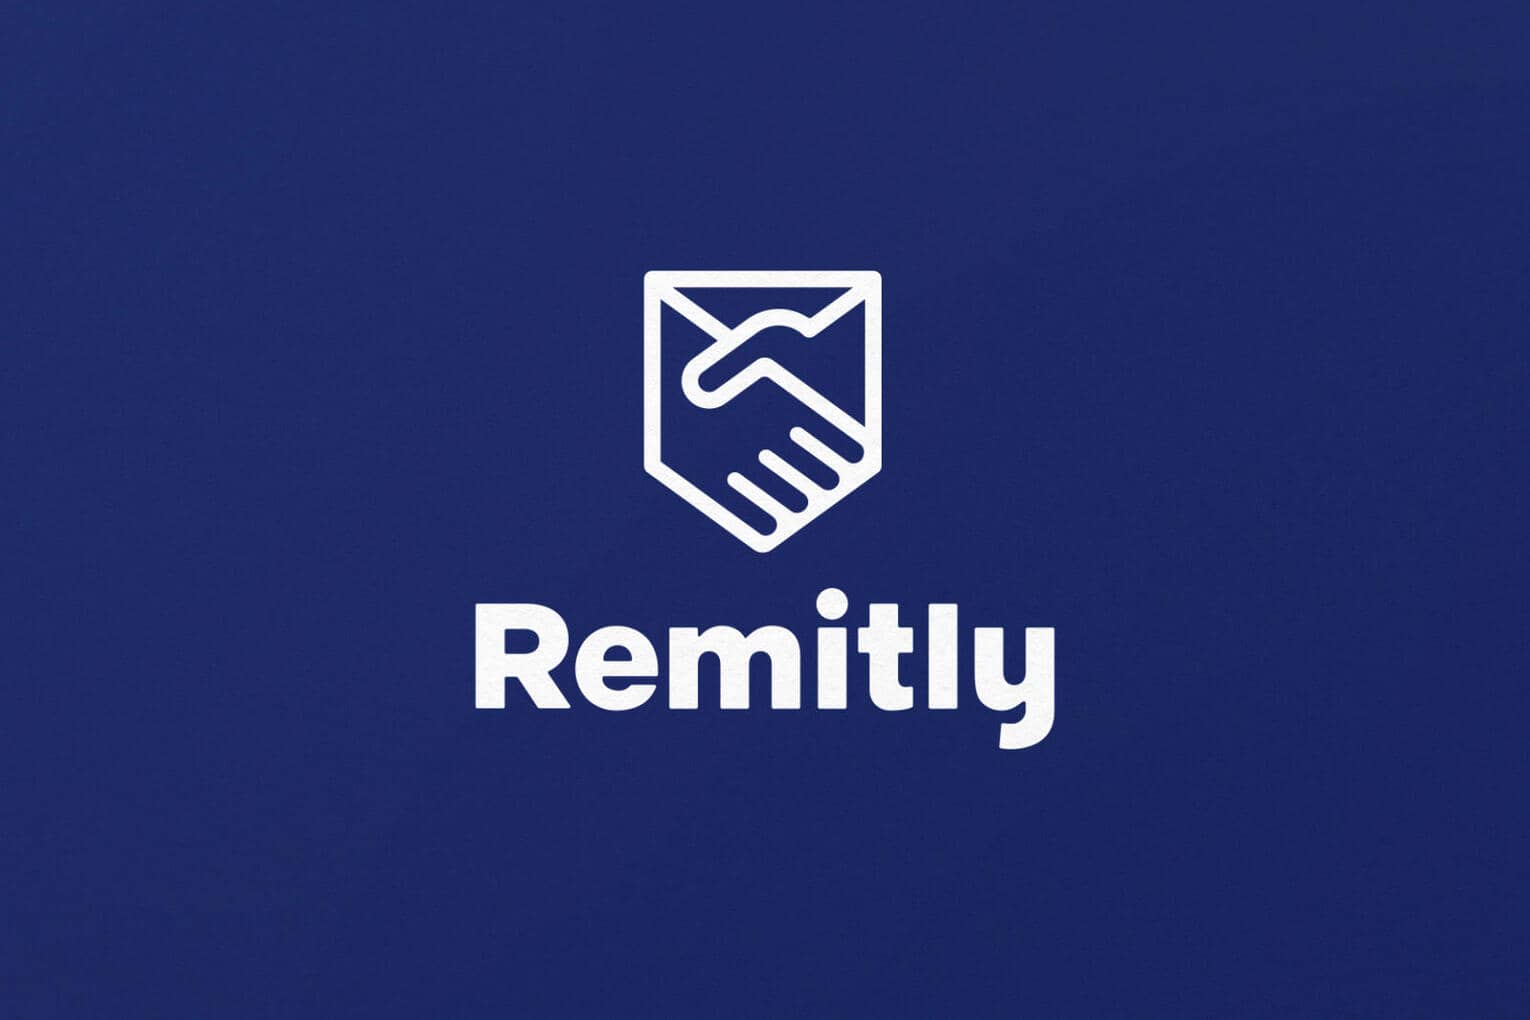 Remitly, la meilleure plateforme pour envoyer de l’argent en Colombie